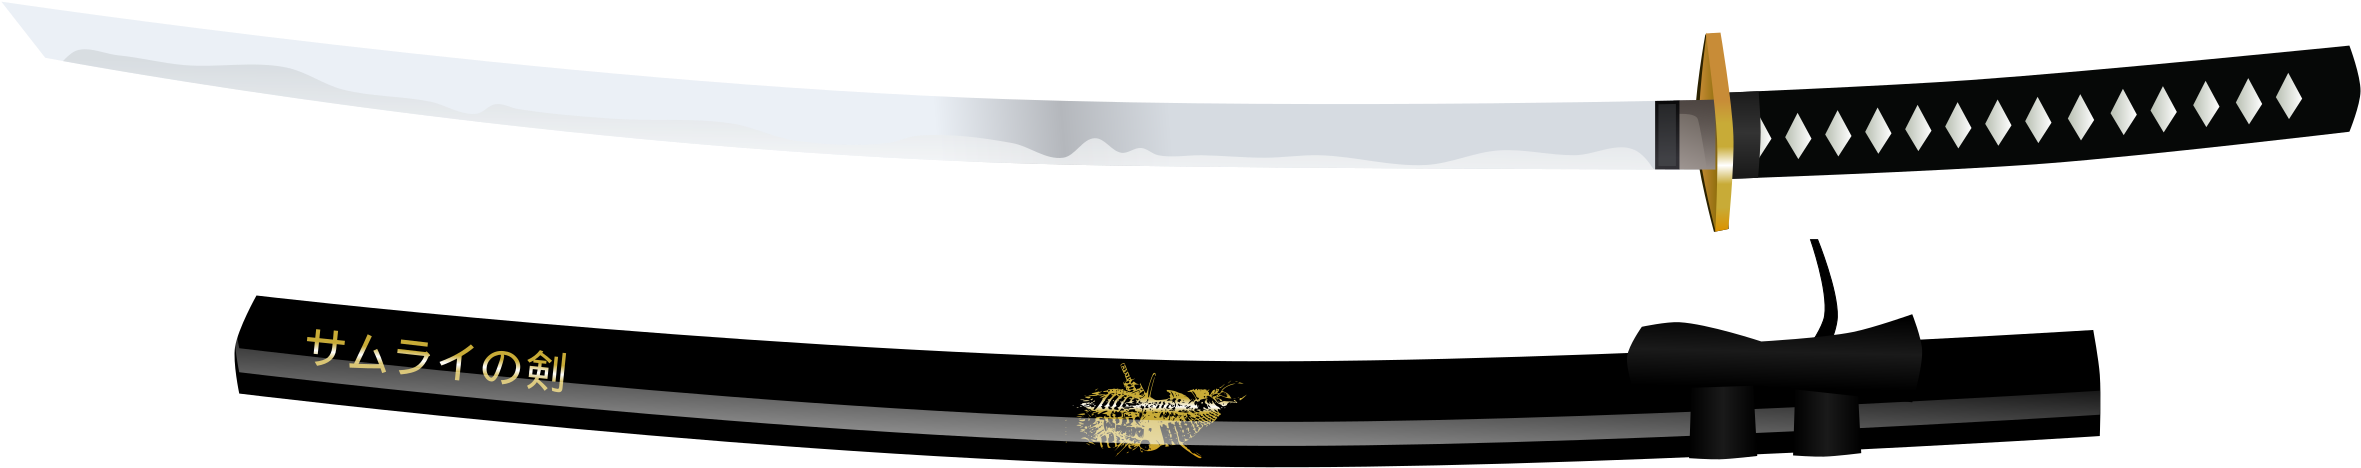 Katana Png - Real Japan Sword Transparent (2400x507), Png Download